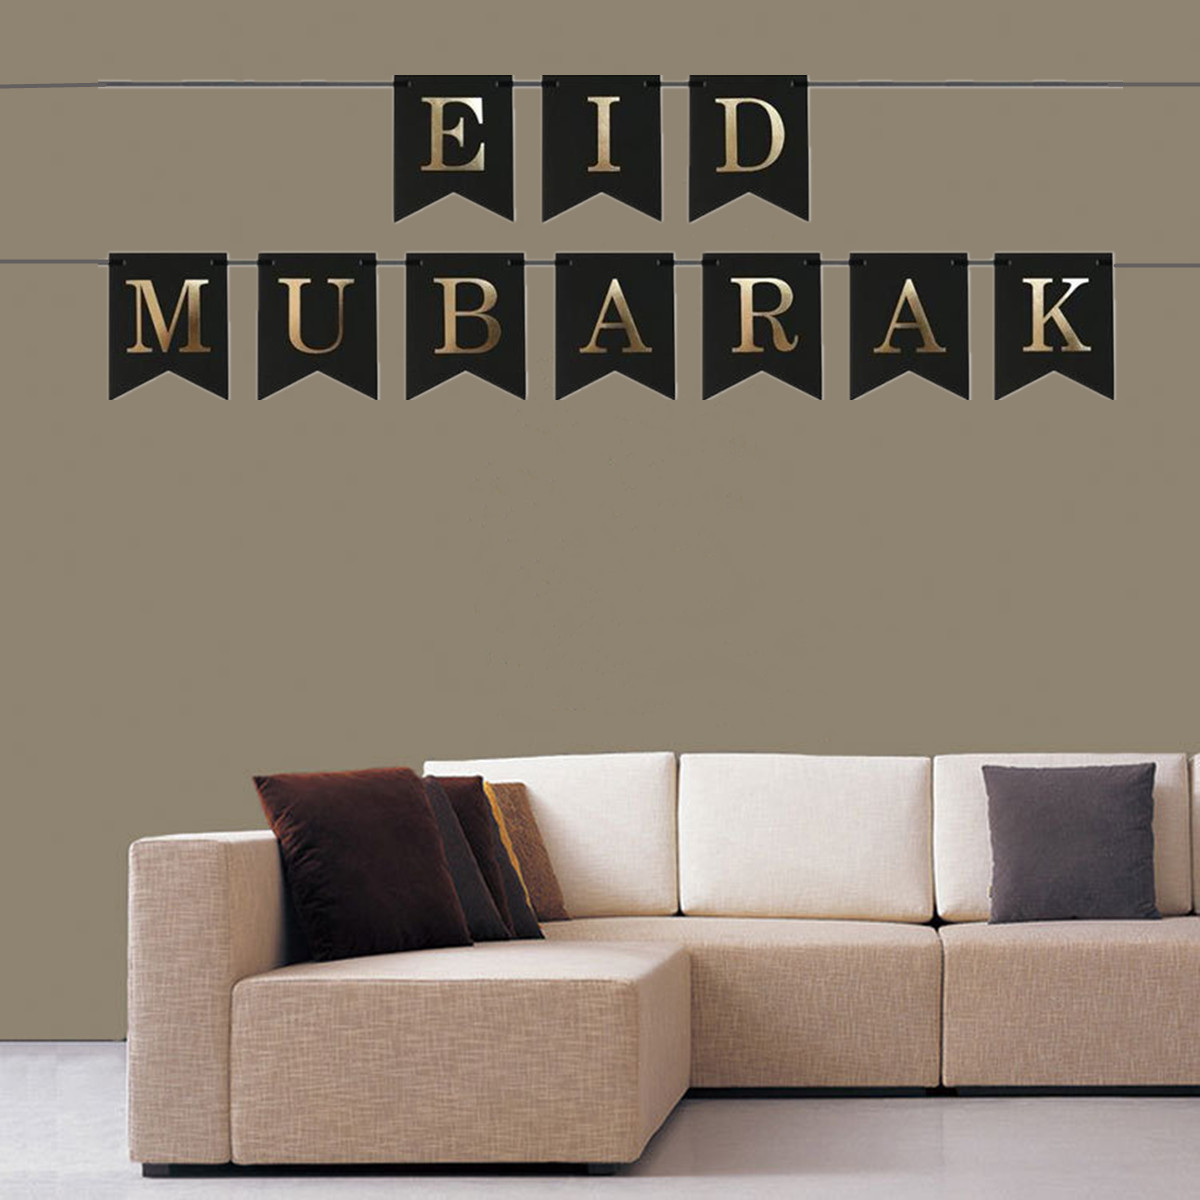 Eid-Mubarak-Ramadan-Kareem-Islam-Pennant-Bunting-Home-Party-Banner-Decorations-1632760-3